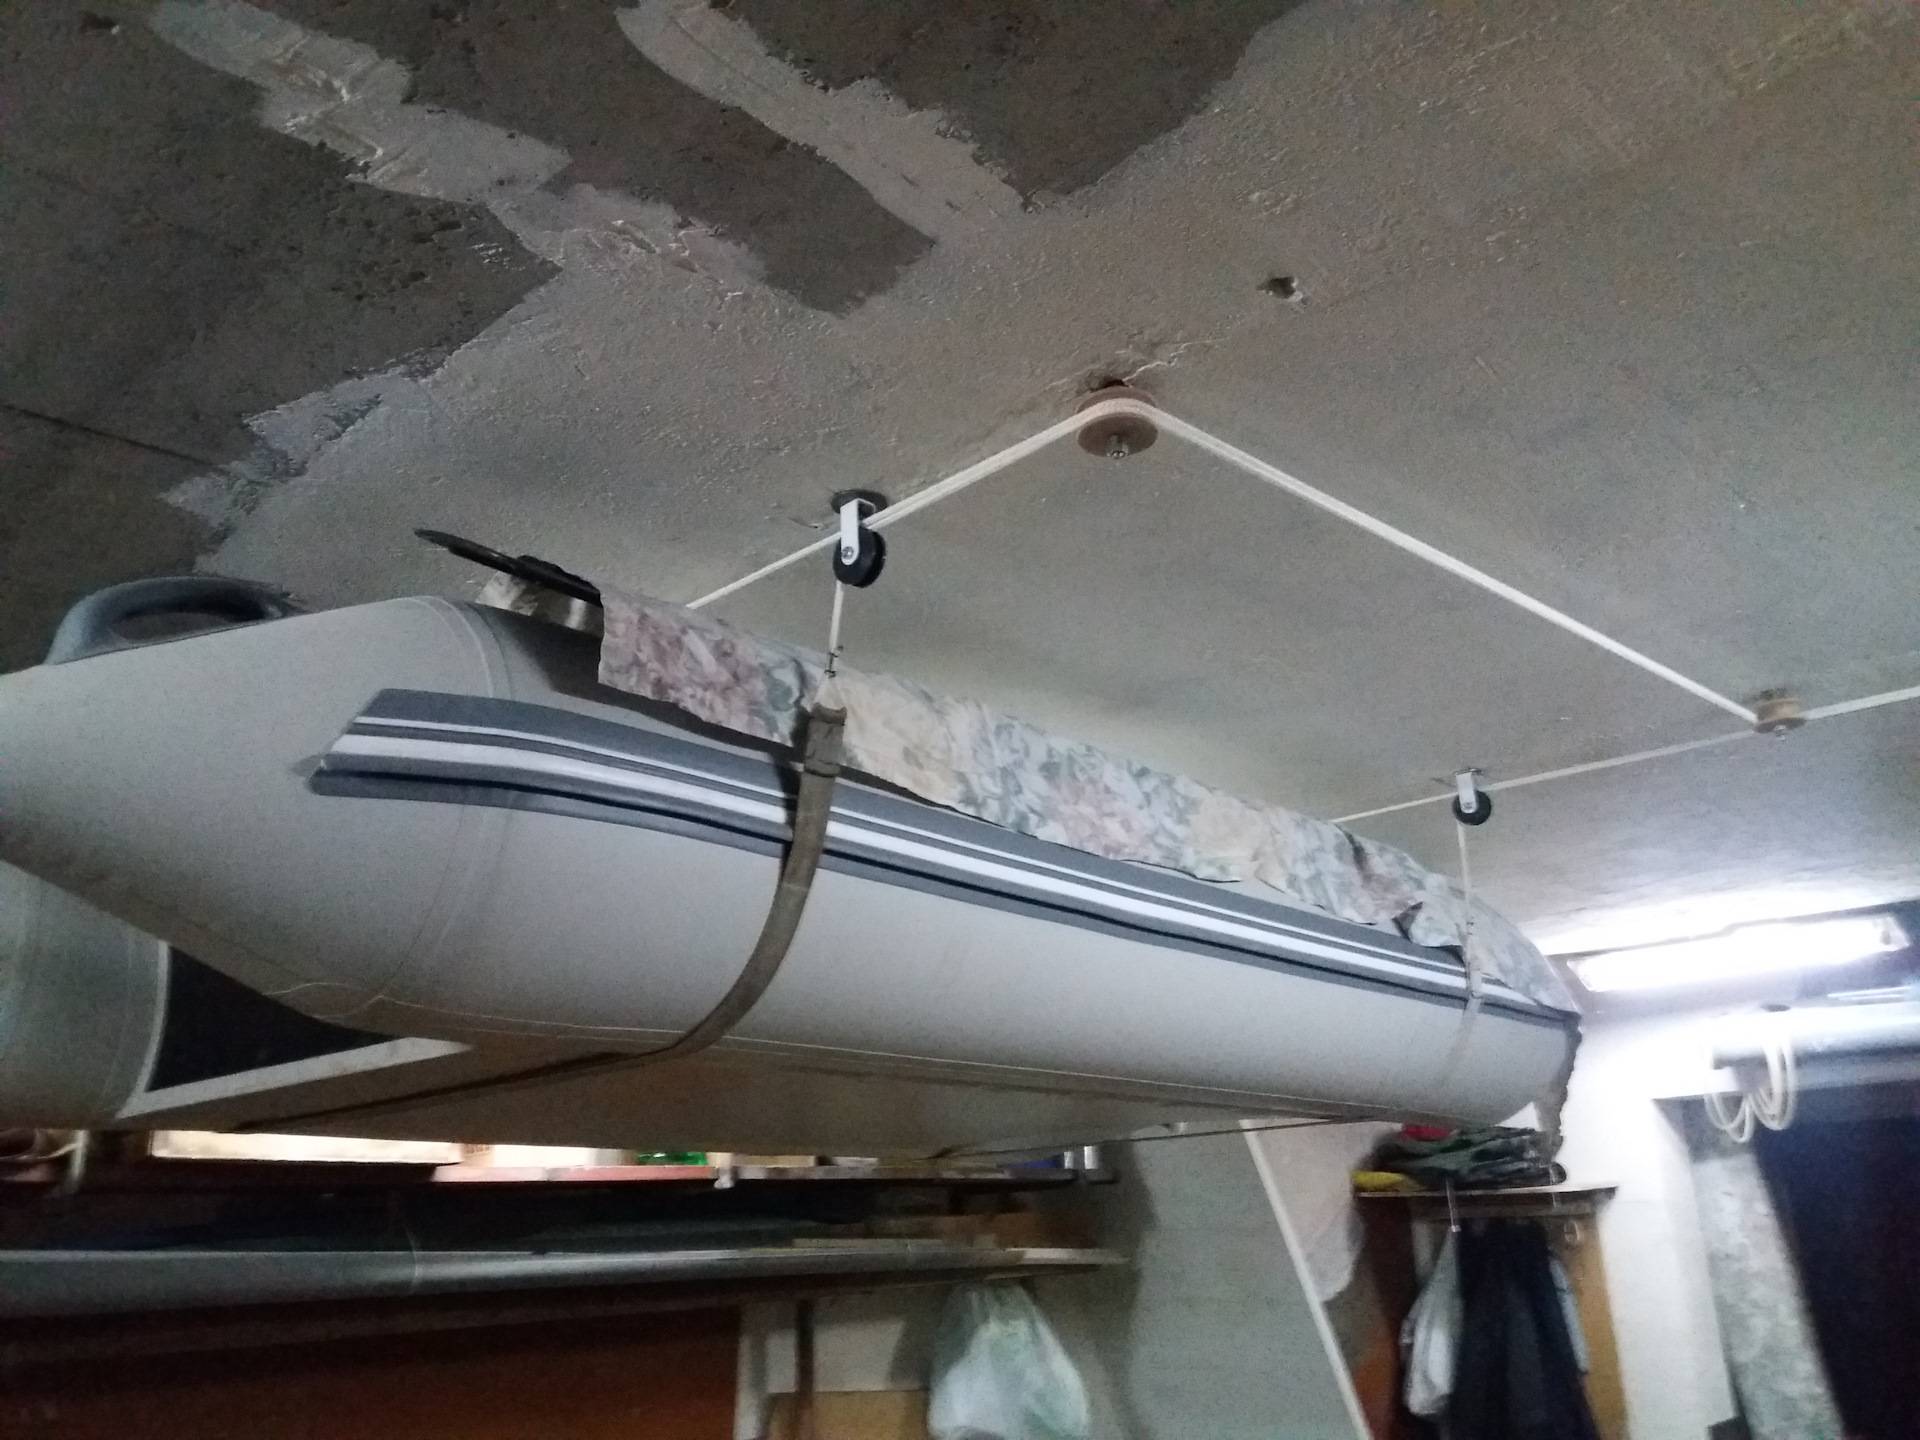 Хранение пвх лодки зимой в гараже под потолком, правильное хранение лодки в зимний период | гаражтек